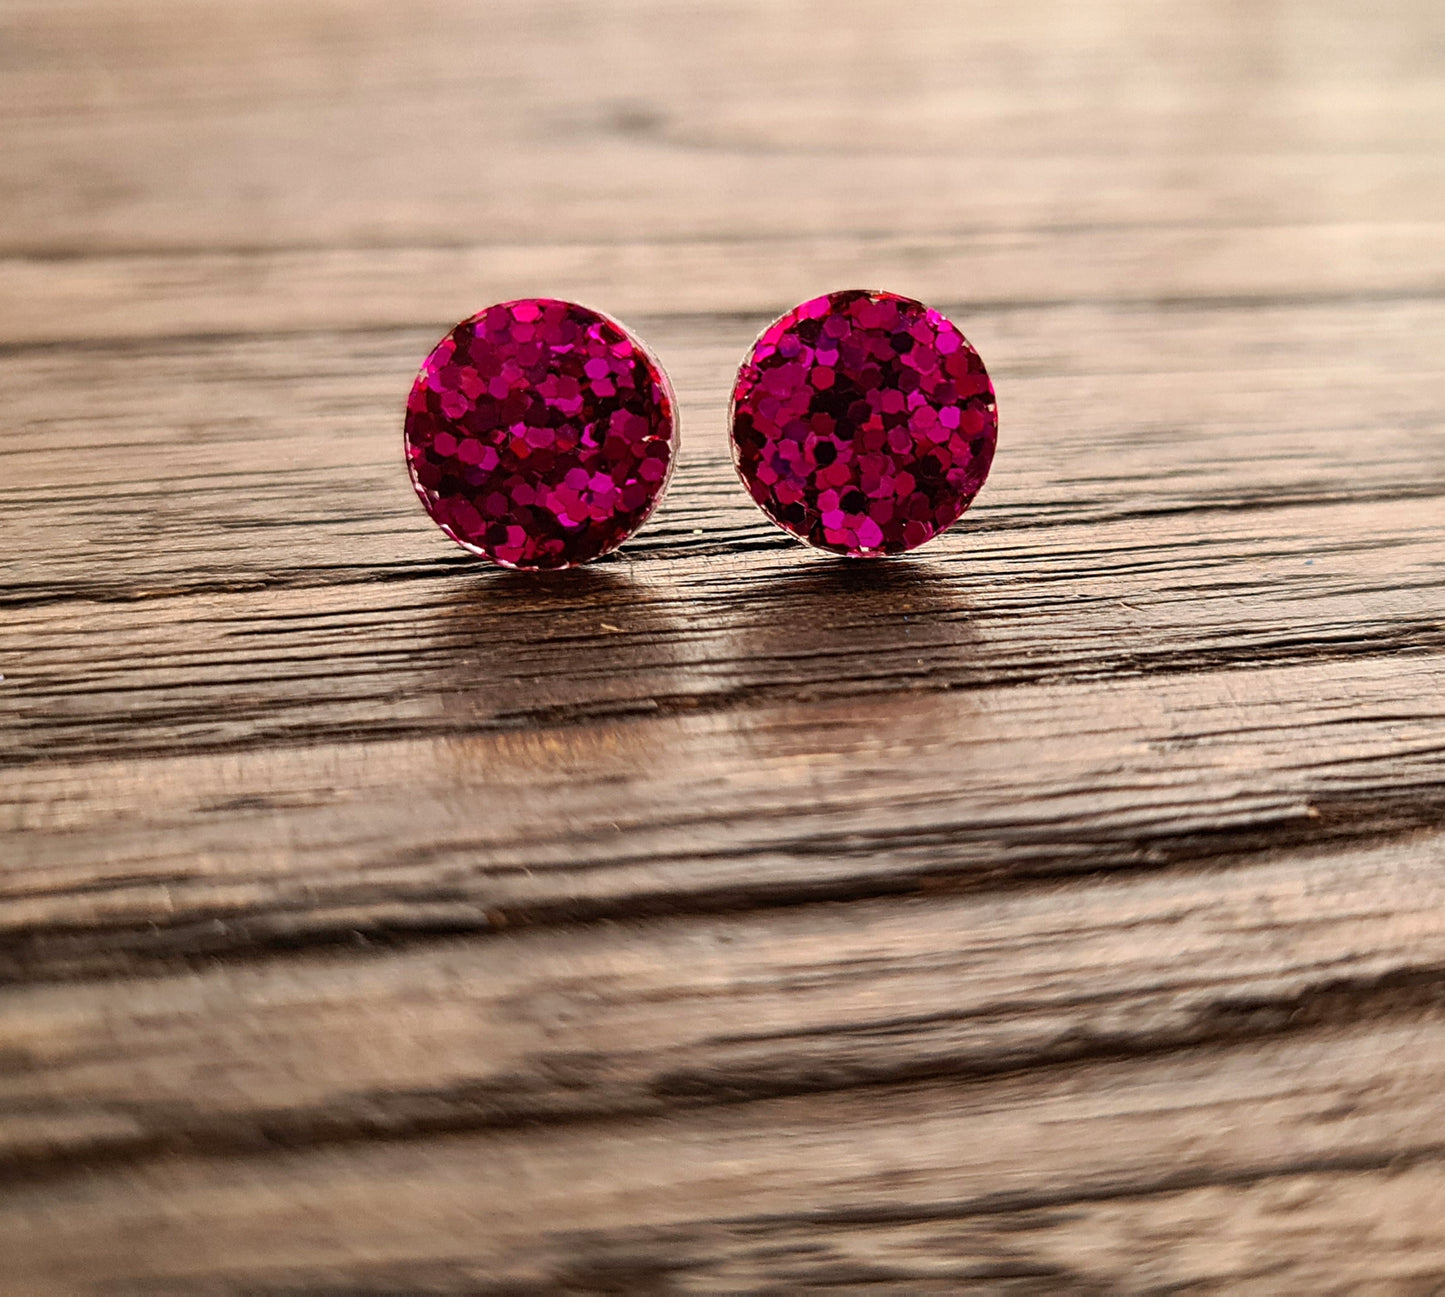 Circle Dot Resin Stud Earrings, Hot Pink Earrings. Stainless Steel Stud Earrings